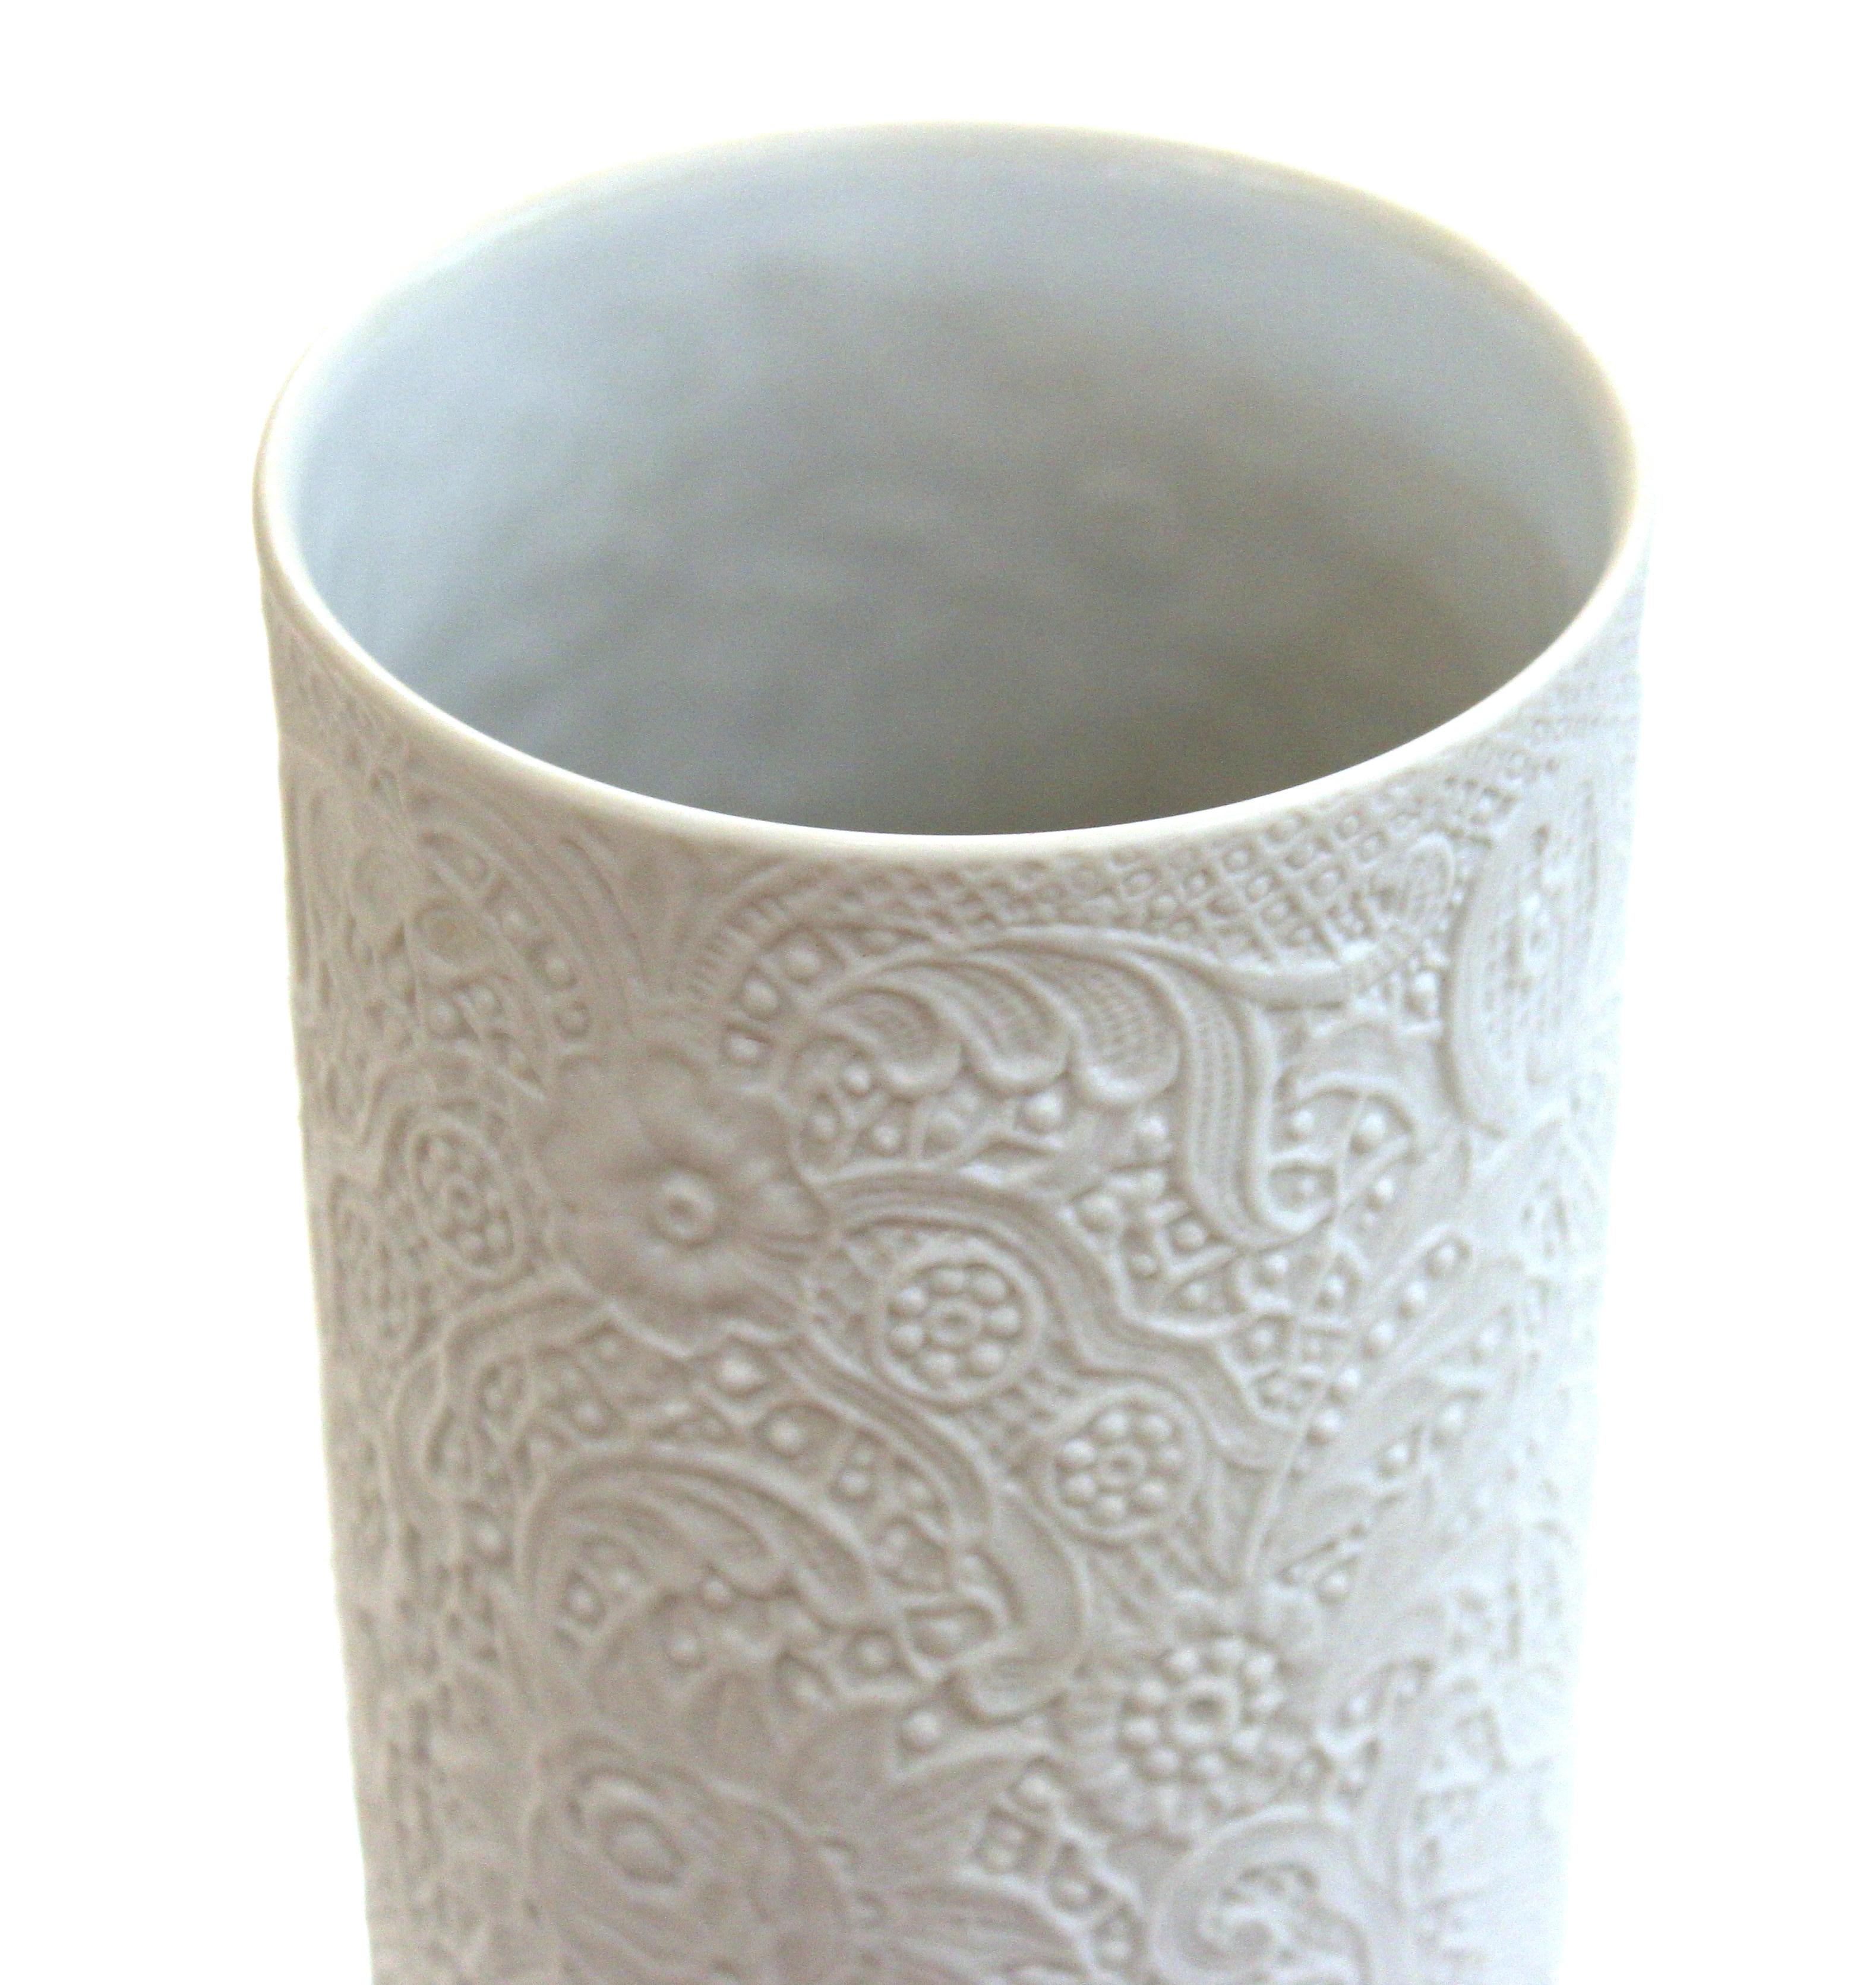 rosenthal porcelain vase